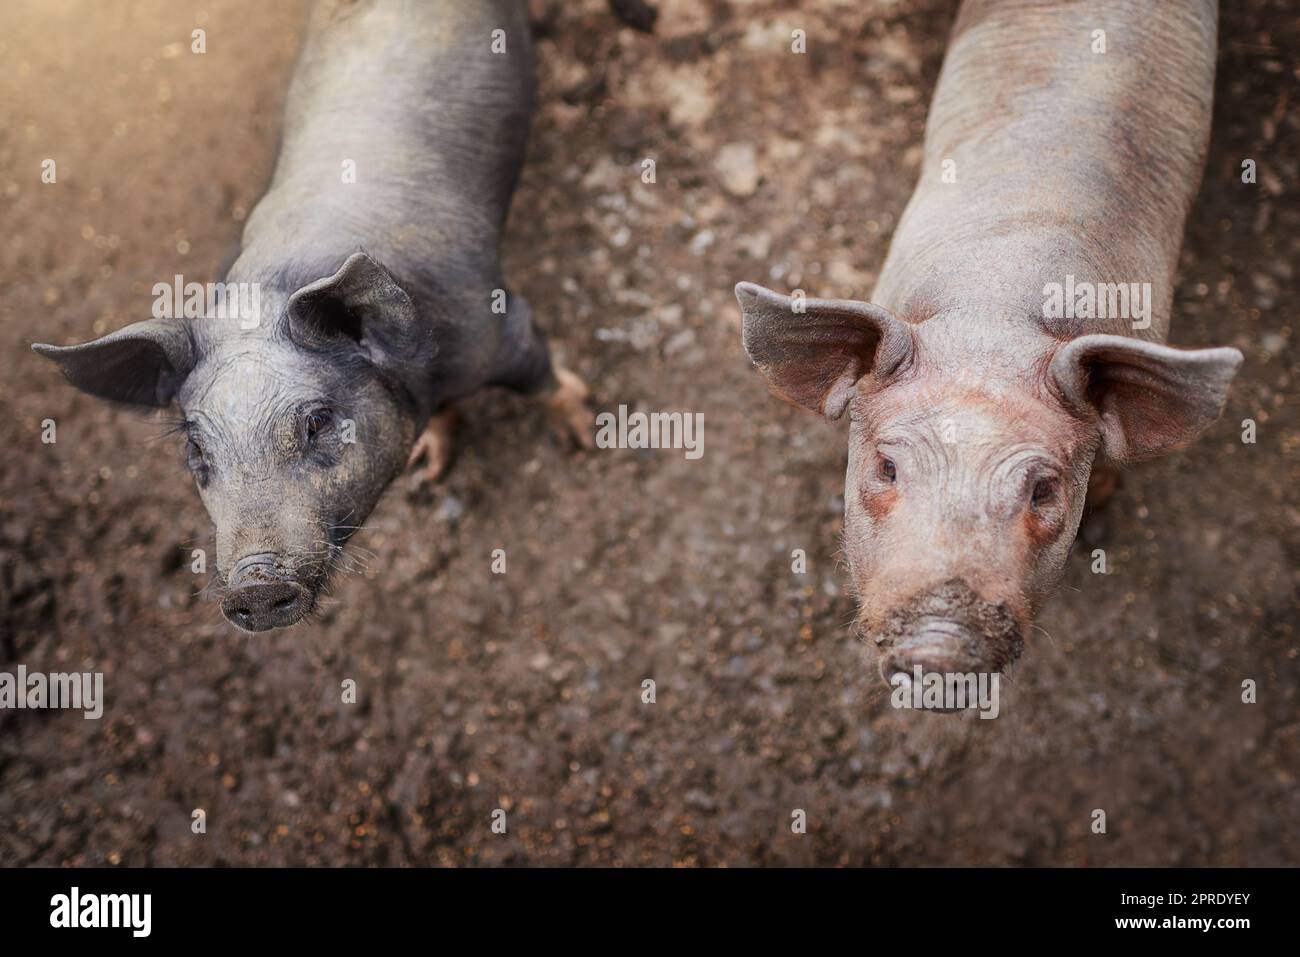 Wurden gut gepflegt auf dieser Farm. Hoch angesetzt von zwei Schweinen, die auf einer Farm in ihrer Feder stehen. Stockfoto